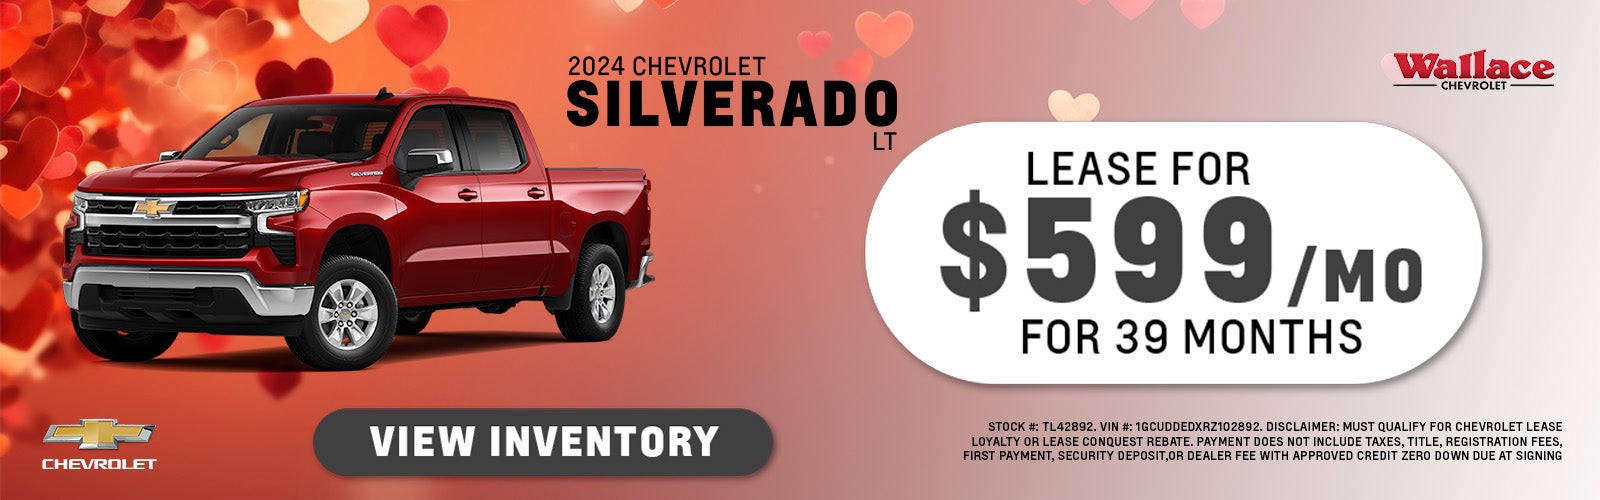 Chevy Silverado Special Offer